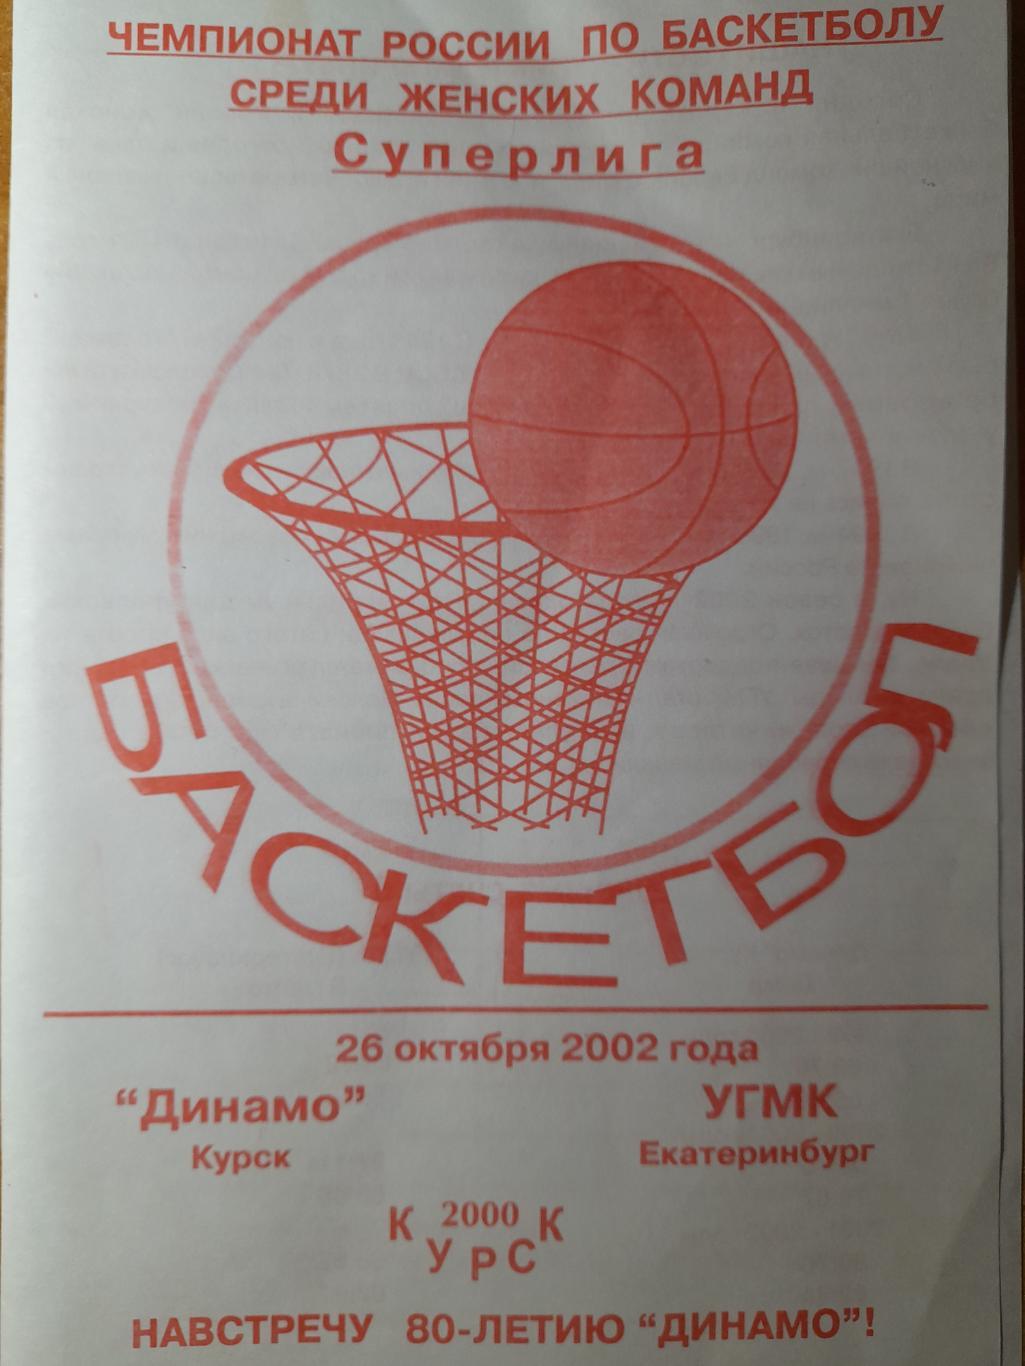 Динамо Курск - УГМК Екатеринбург, Суперлига 2002-03 (женщины), 26.10.2002 г.